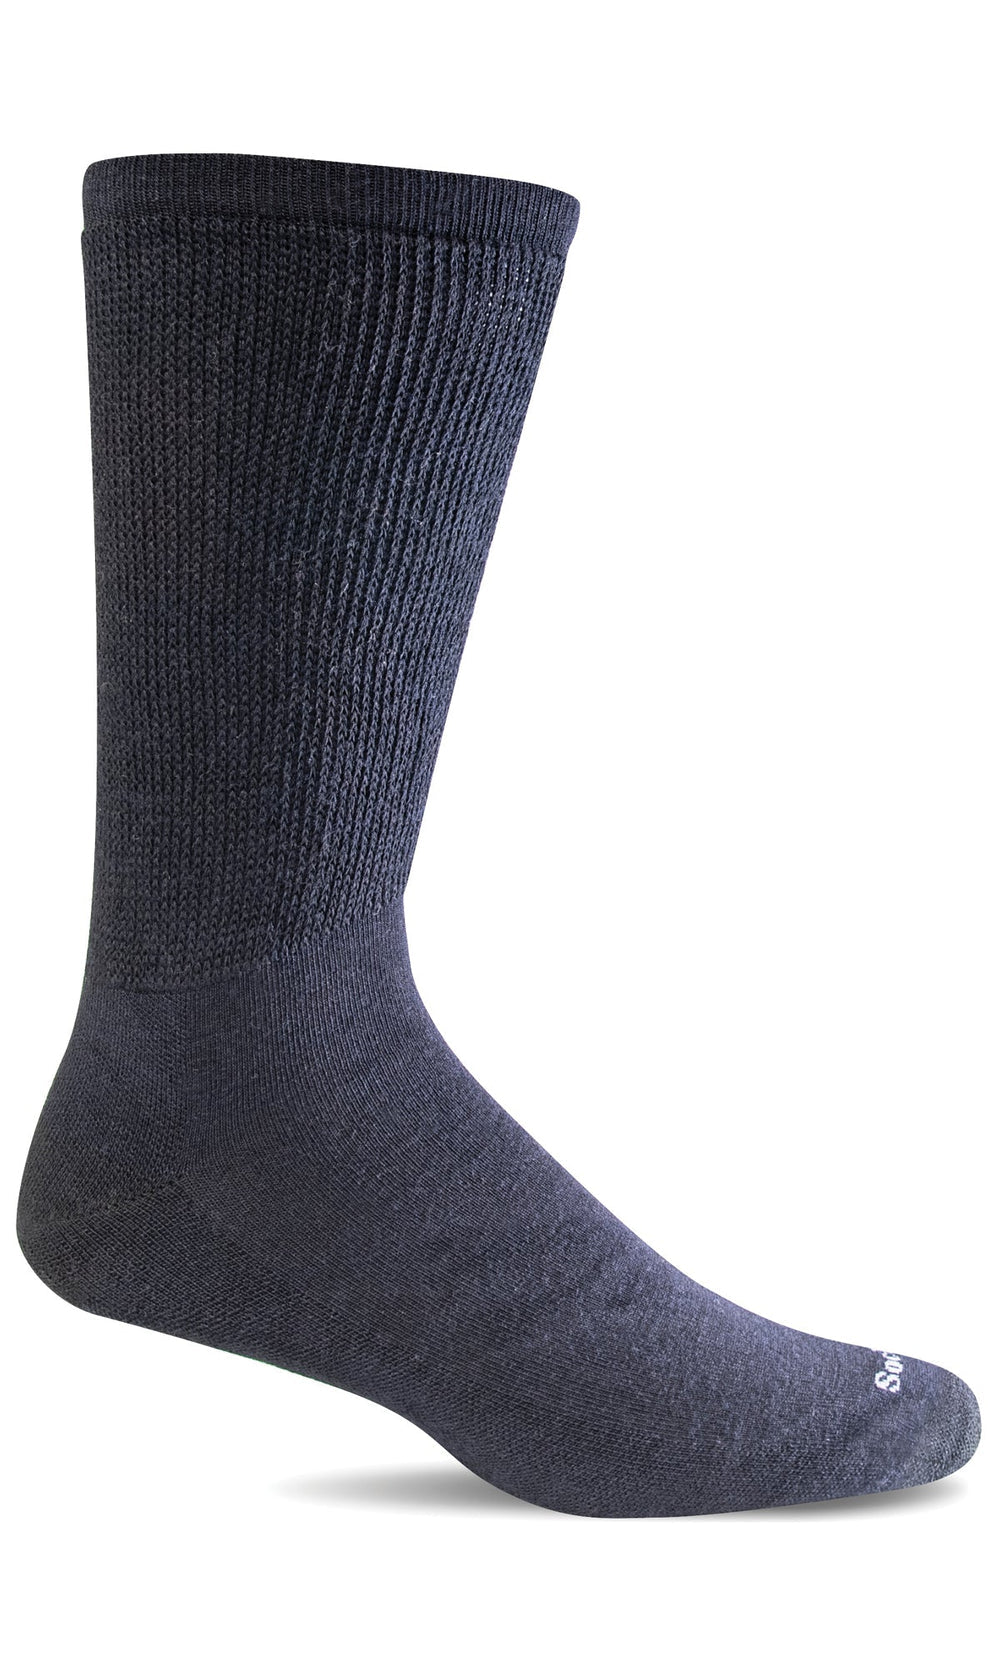 Sockwell Extra Easy Relaxed Fit Socks (Men's)